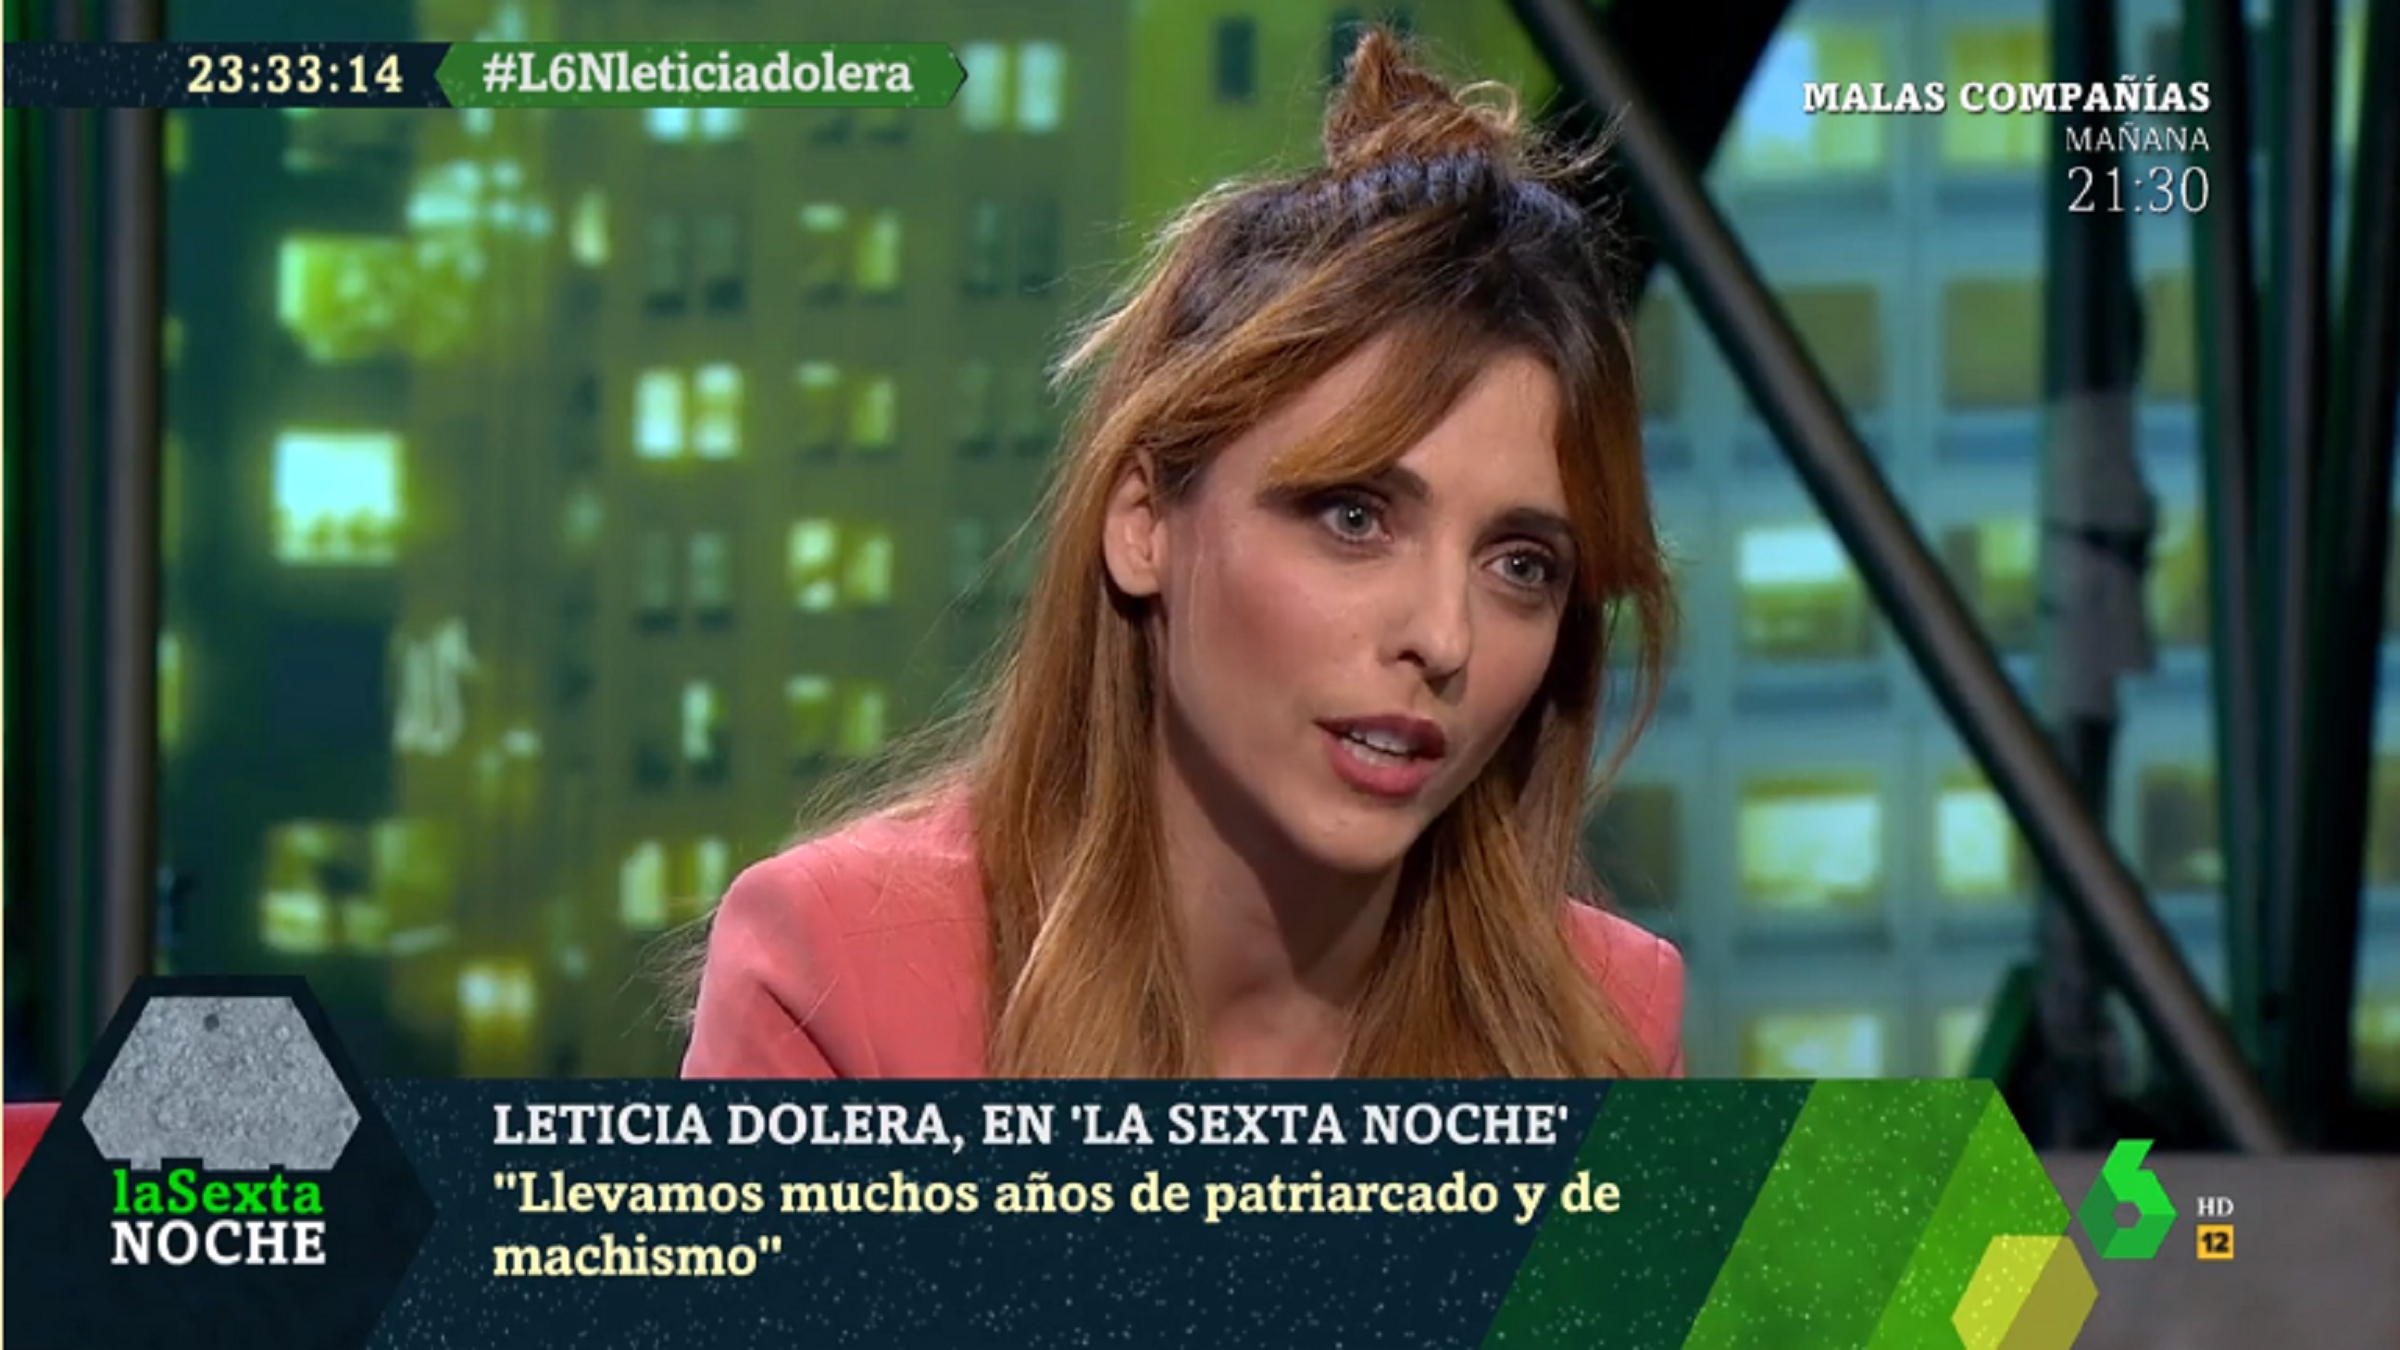 El llamamiento de Leticia Dolera a los hombres: "No nos miréis, uníos al feminismo"